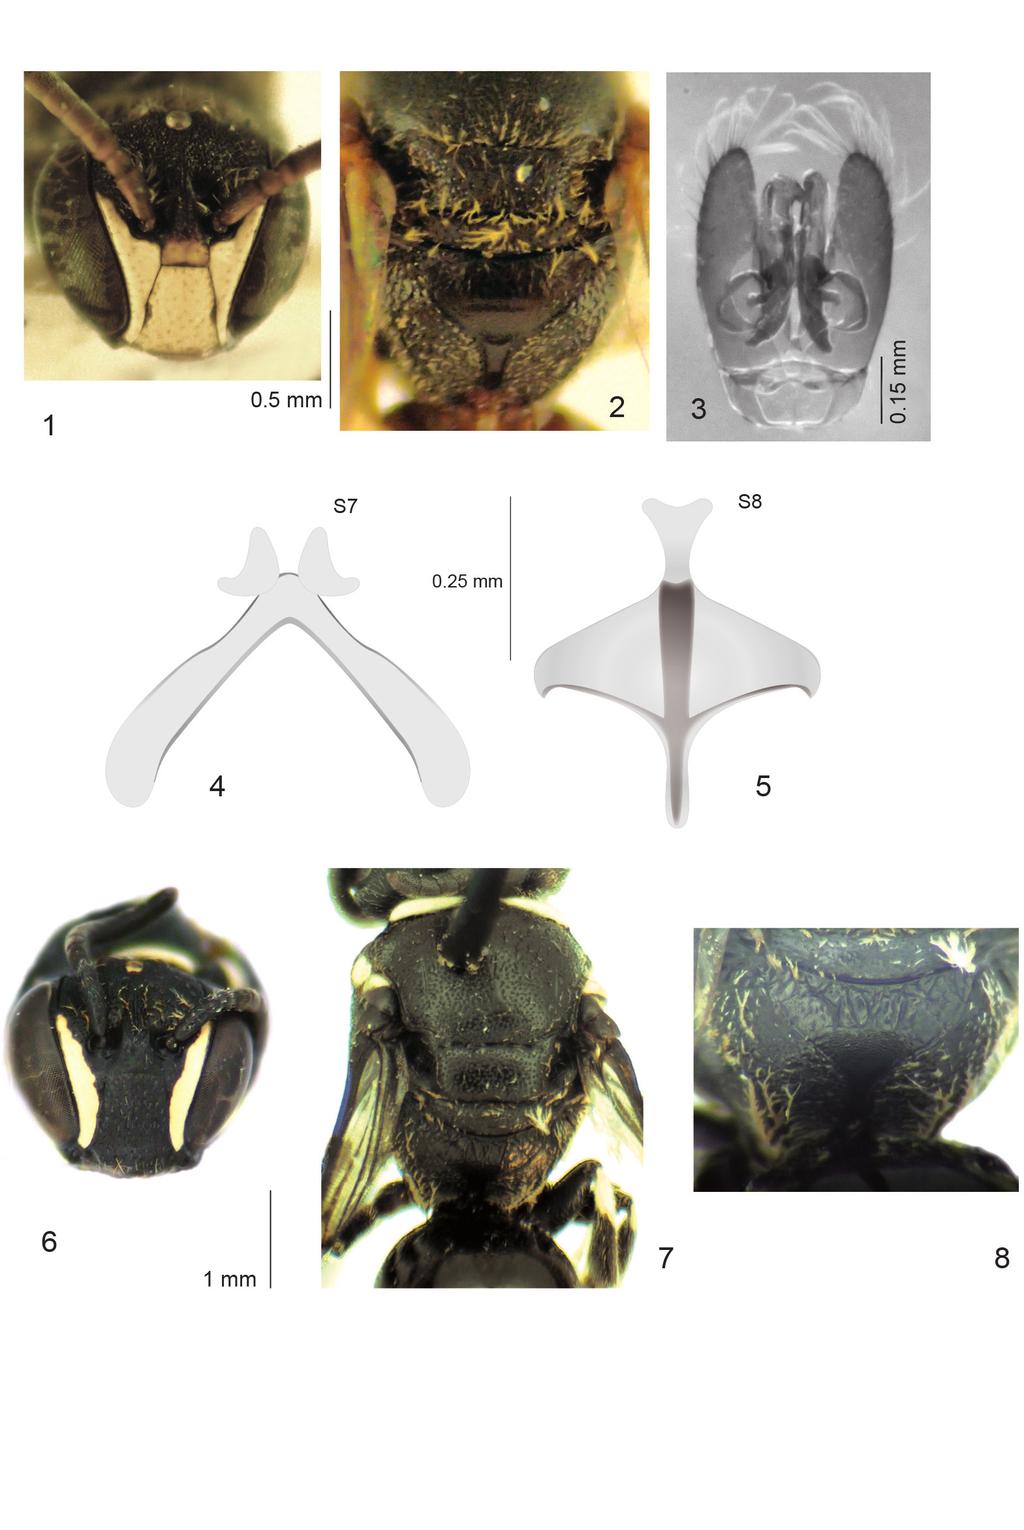 GENARO: Especies nuevas y nuevos registros de abejas para Las Antillas 43 Figuras 1-8. Especies antillanas nuevas del género Hylaeus.